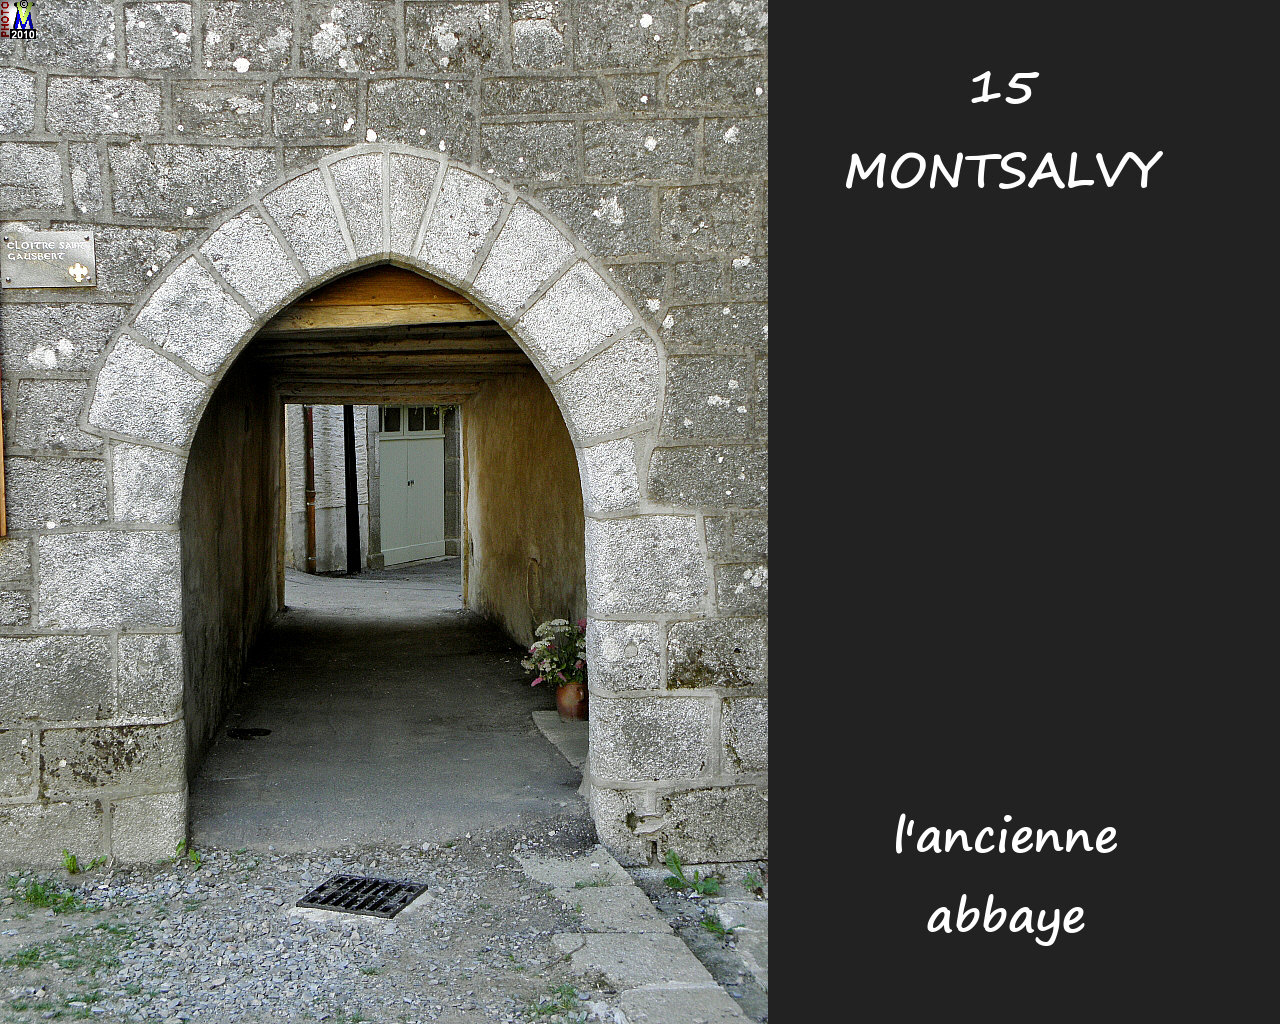 15MONSALVY_abbaye_106.jpg